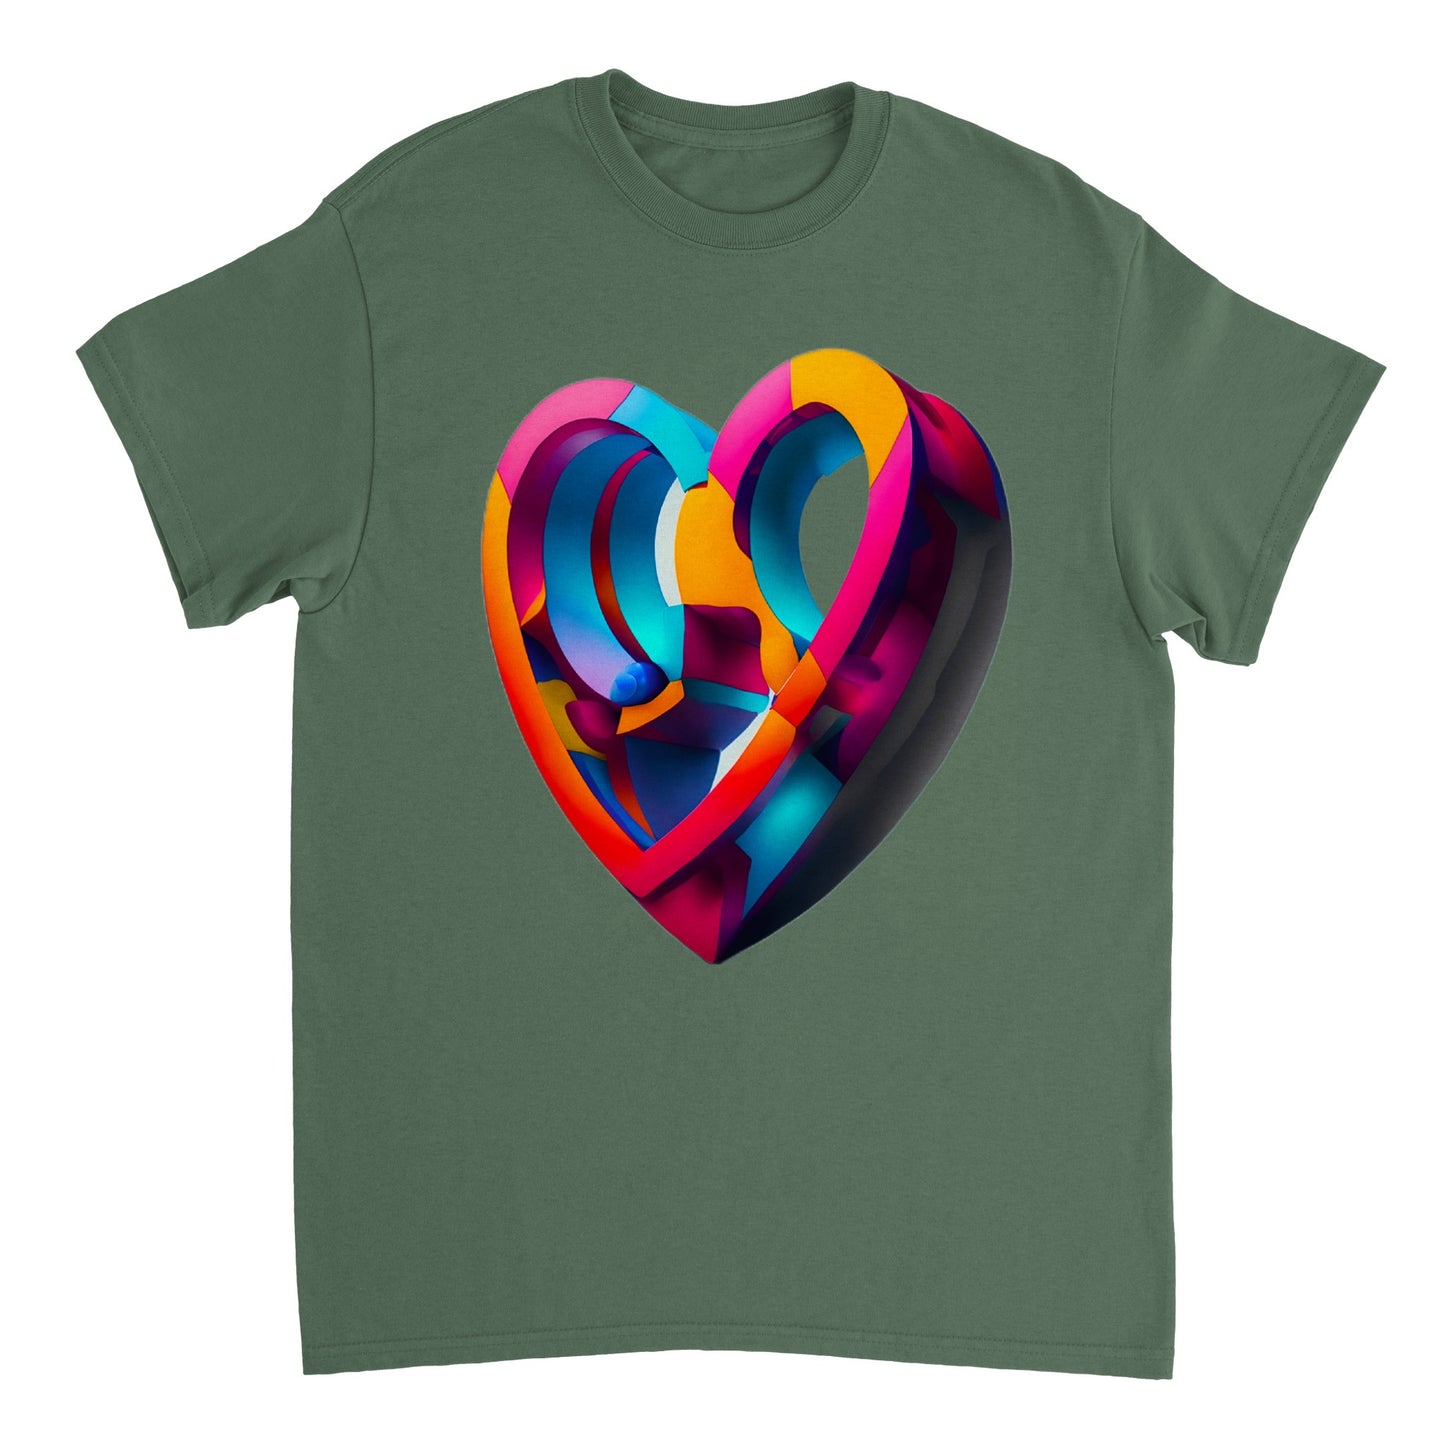 Love Heart - Heavyweight Unisex Crewneck T-shirt 11